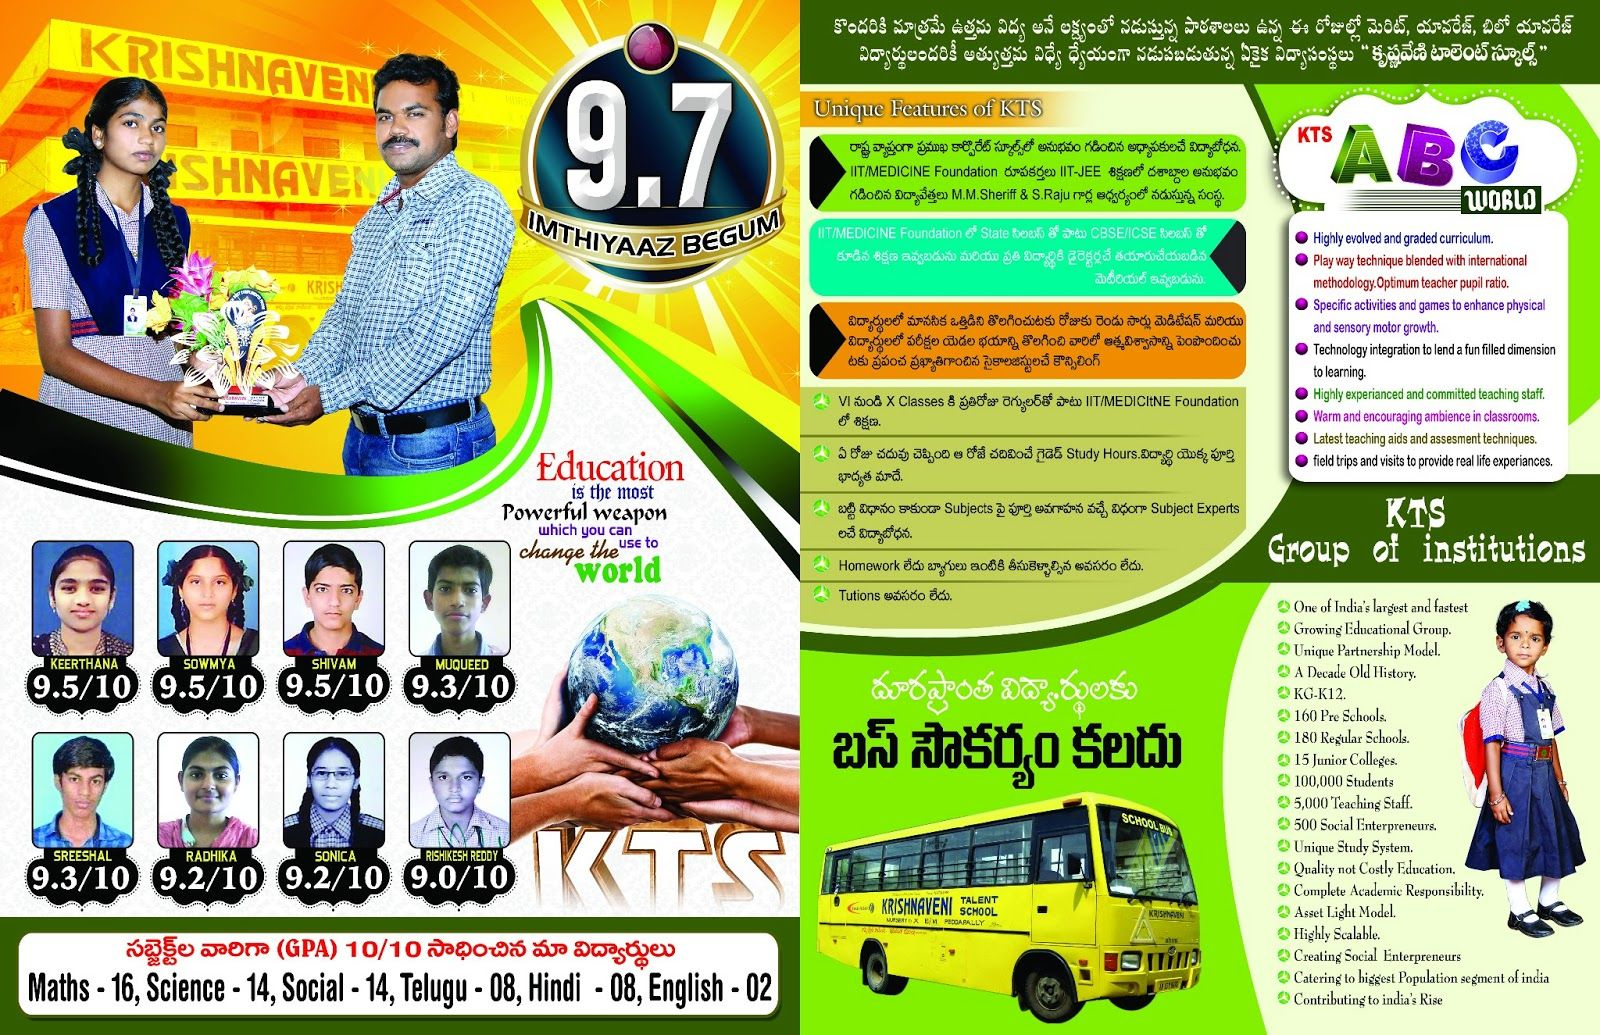 Krishnaveni School Brochure Template | Brochures In 2019 With Regard To Play School Brochure Templates